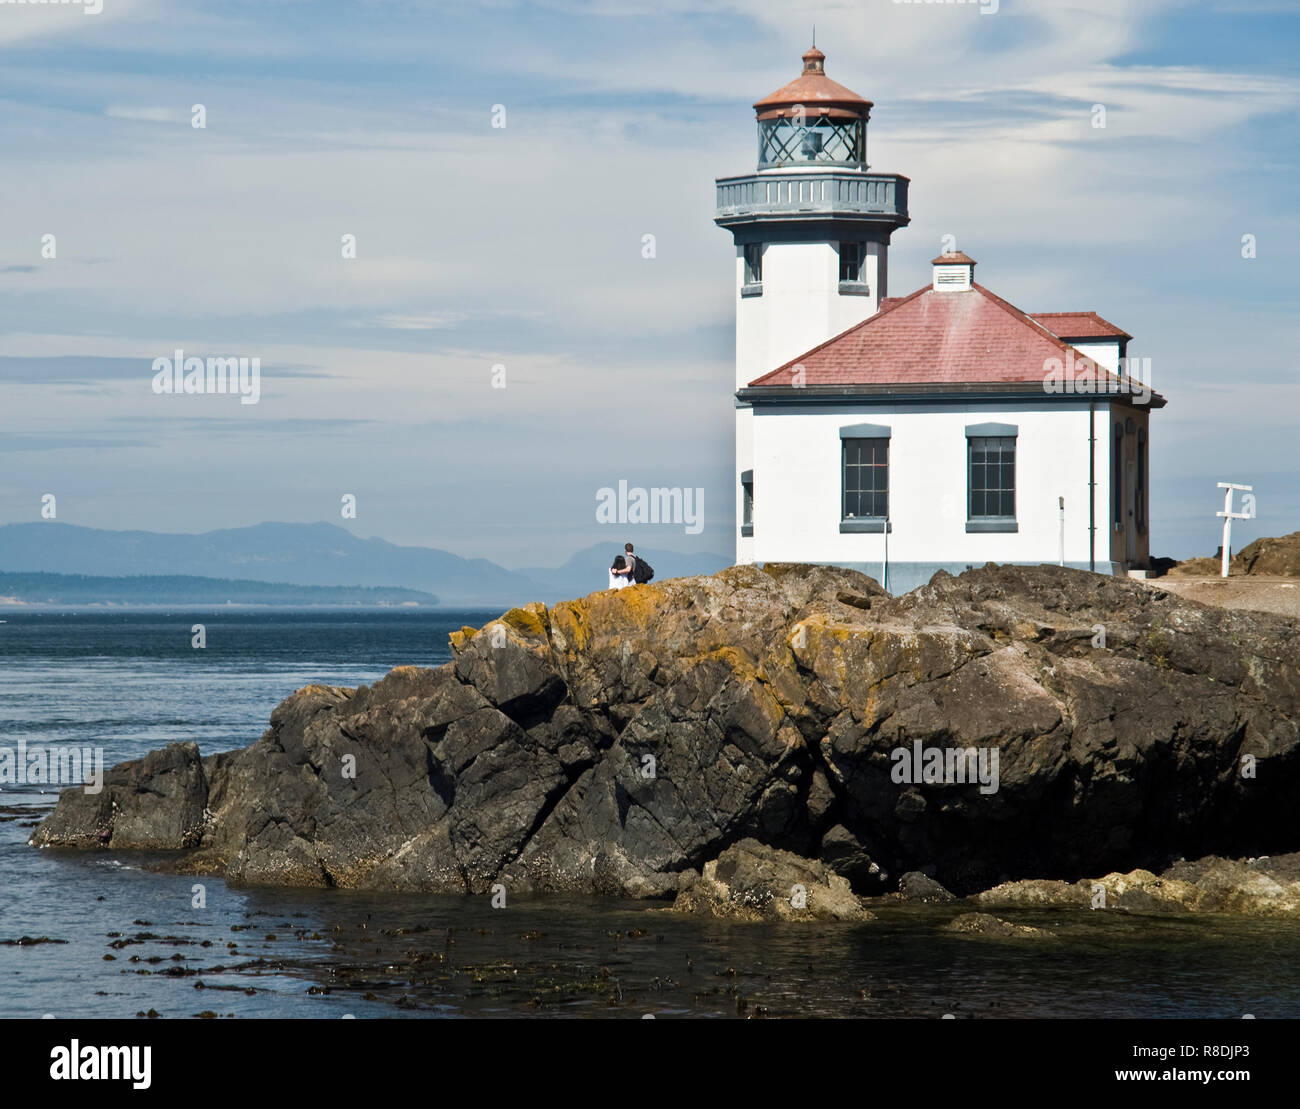 Construit en 1919, le four à chaux phare surplombe Dead Man's Bay sur la côte ouest de l'île San Juan à Washington et fonctionne encore aujourd'hui. Banque D'Images